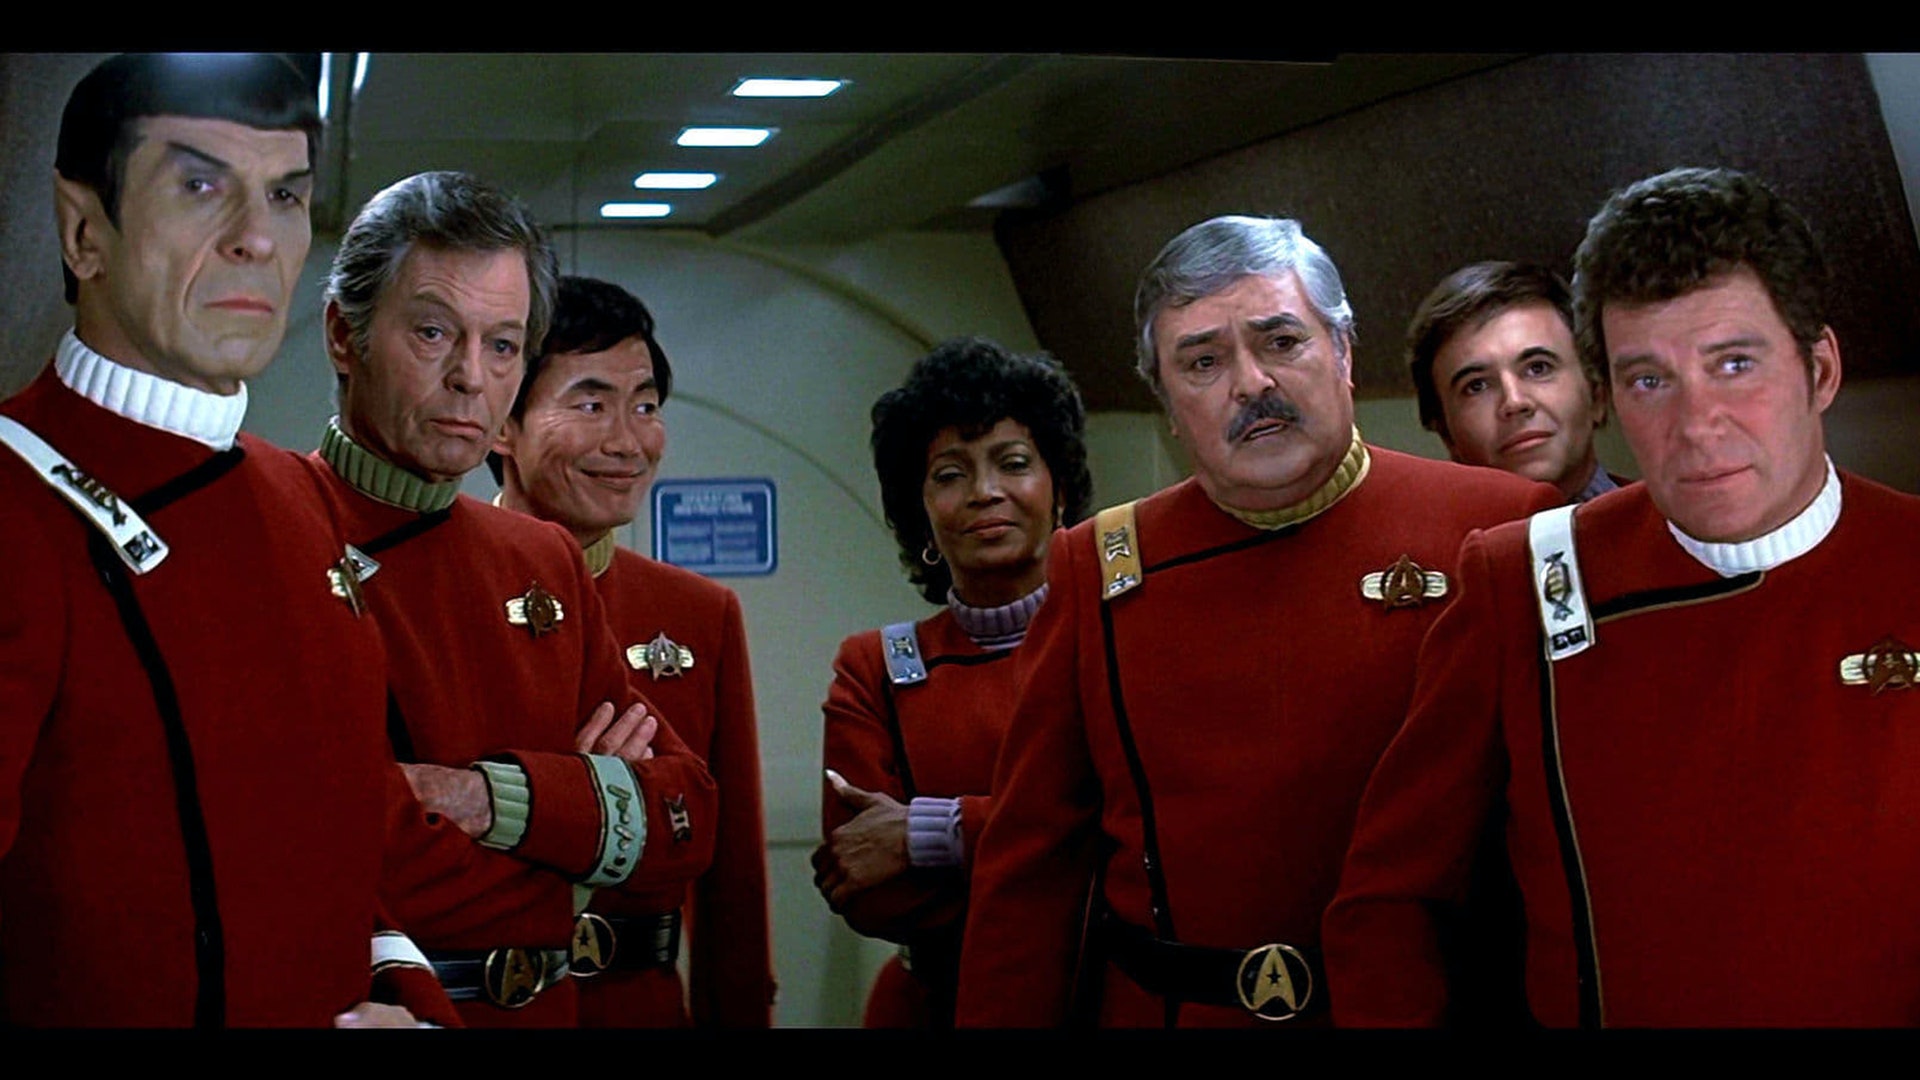 Star Trek Ii: The Wrath Of Khan Wallpapers